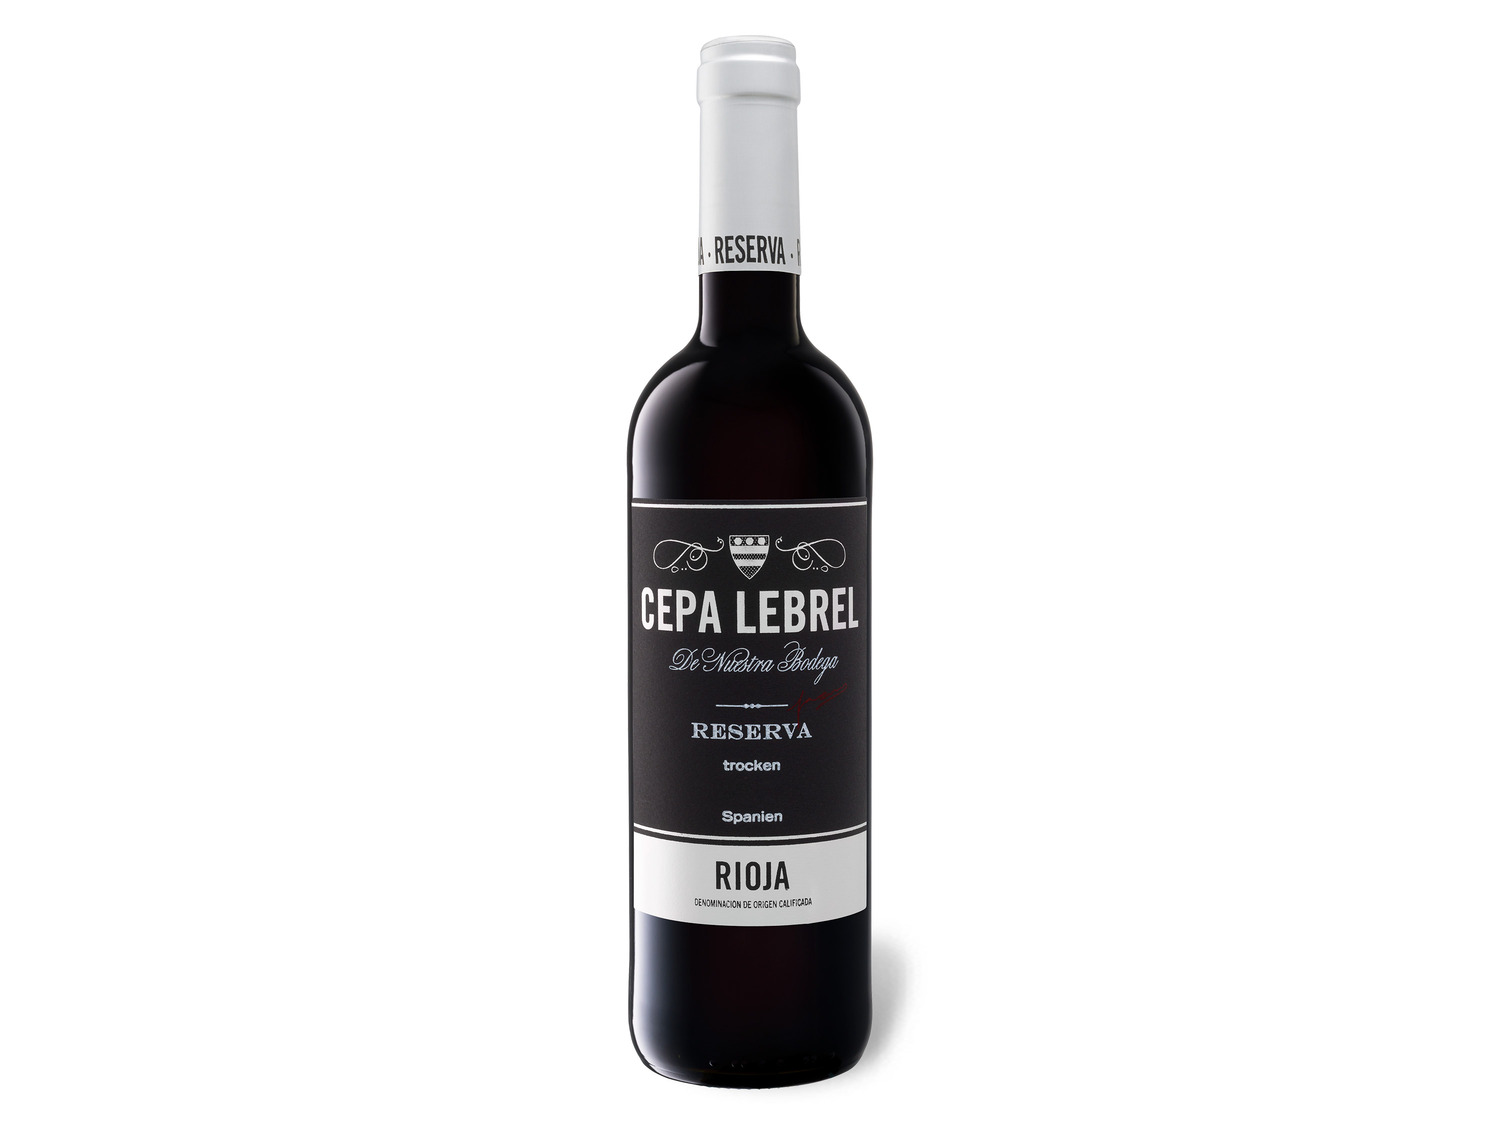 Cepa Lebrel Rioja DOCa trocken, Rotwein 2017 Reserva